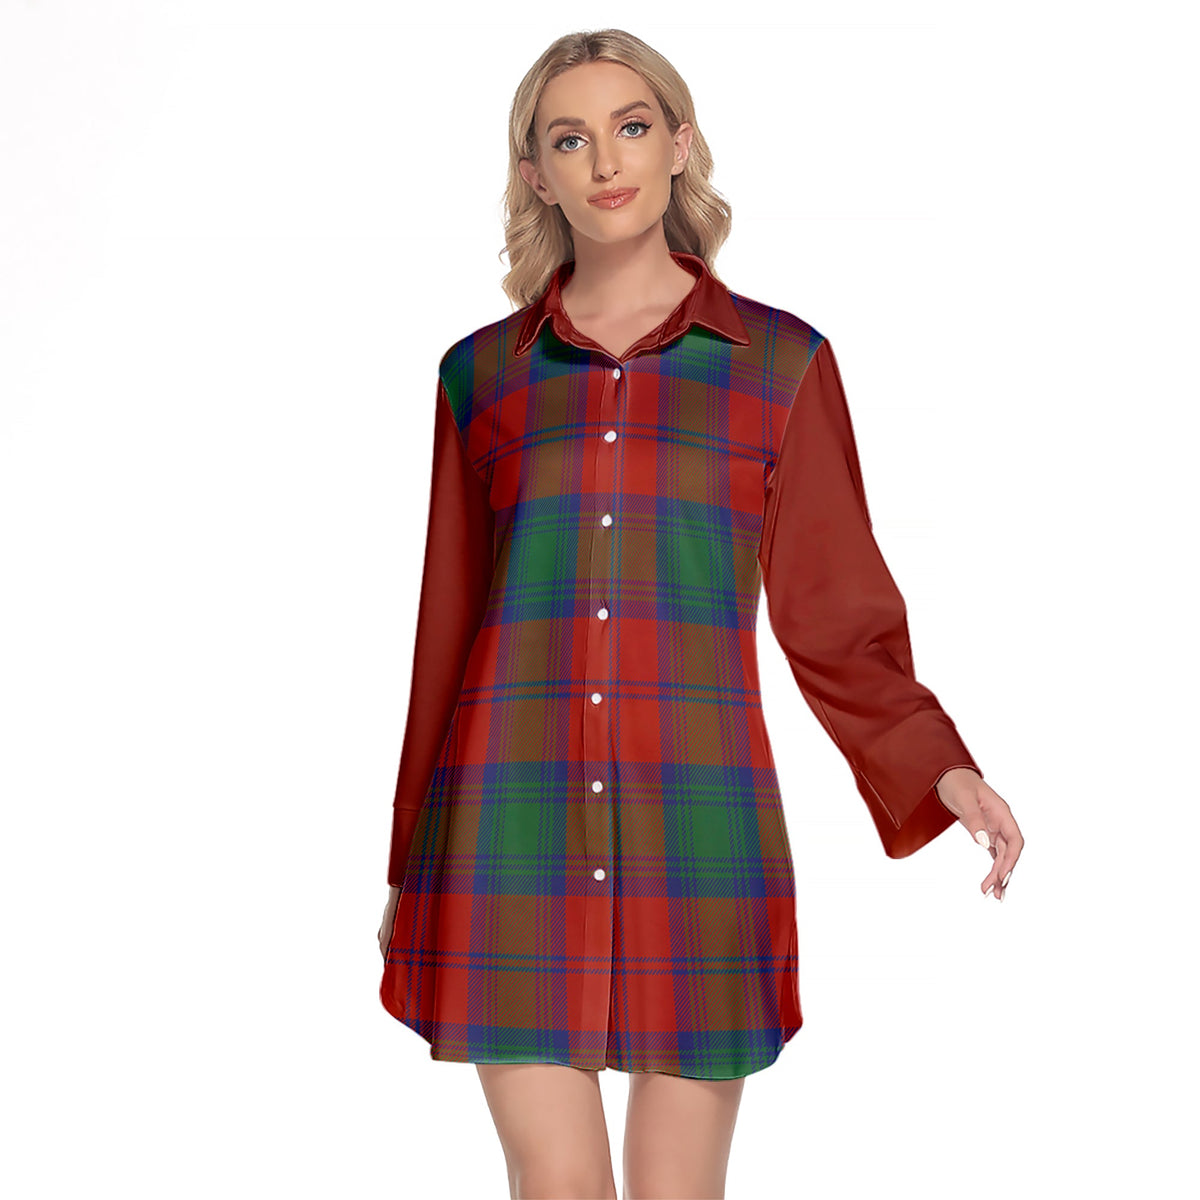 Auchinleck Tartan Women's Lapel Shirt Dress With Long Sleeve